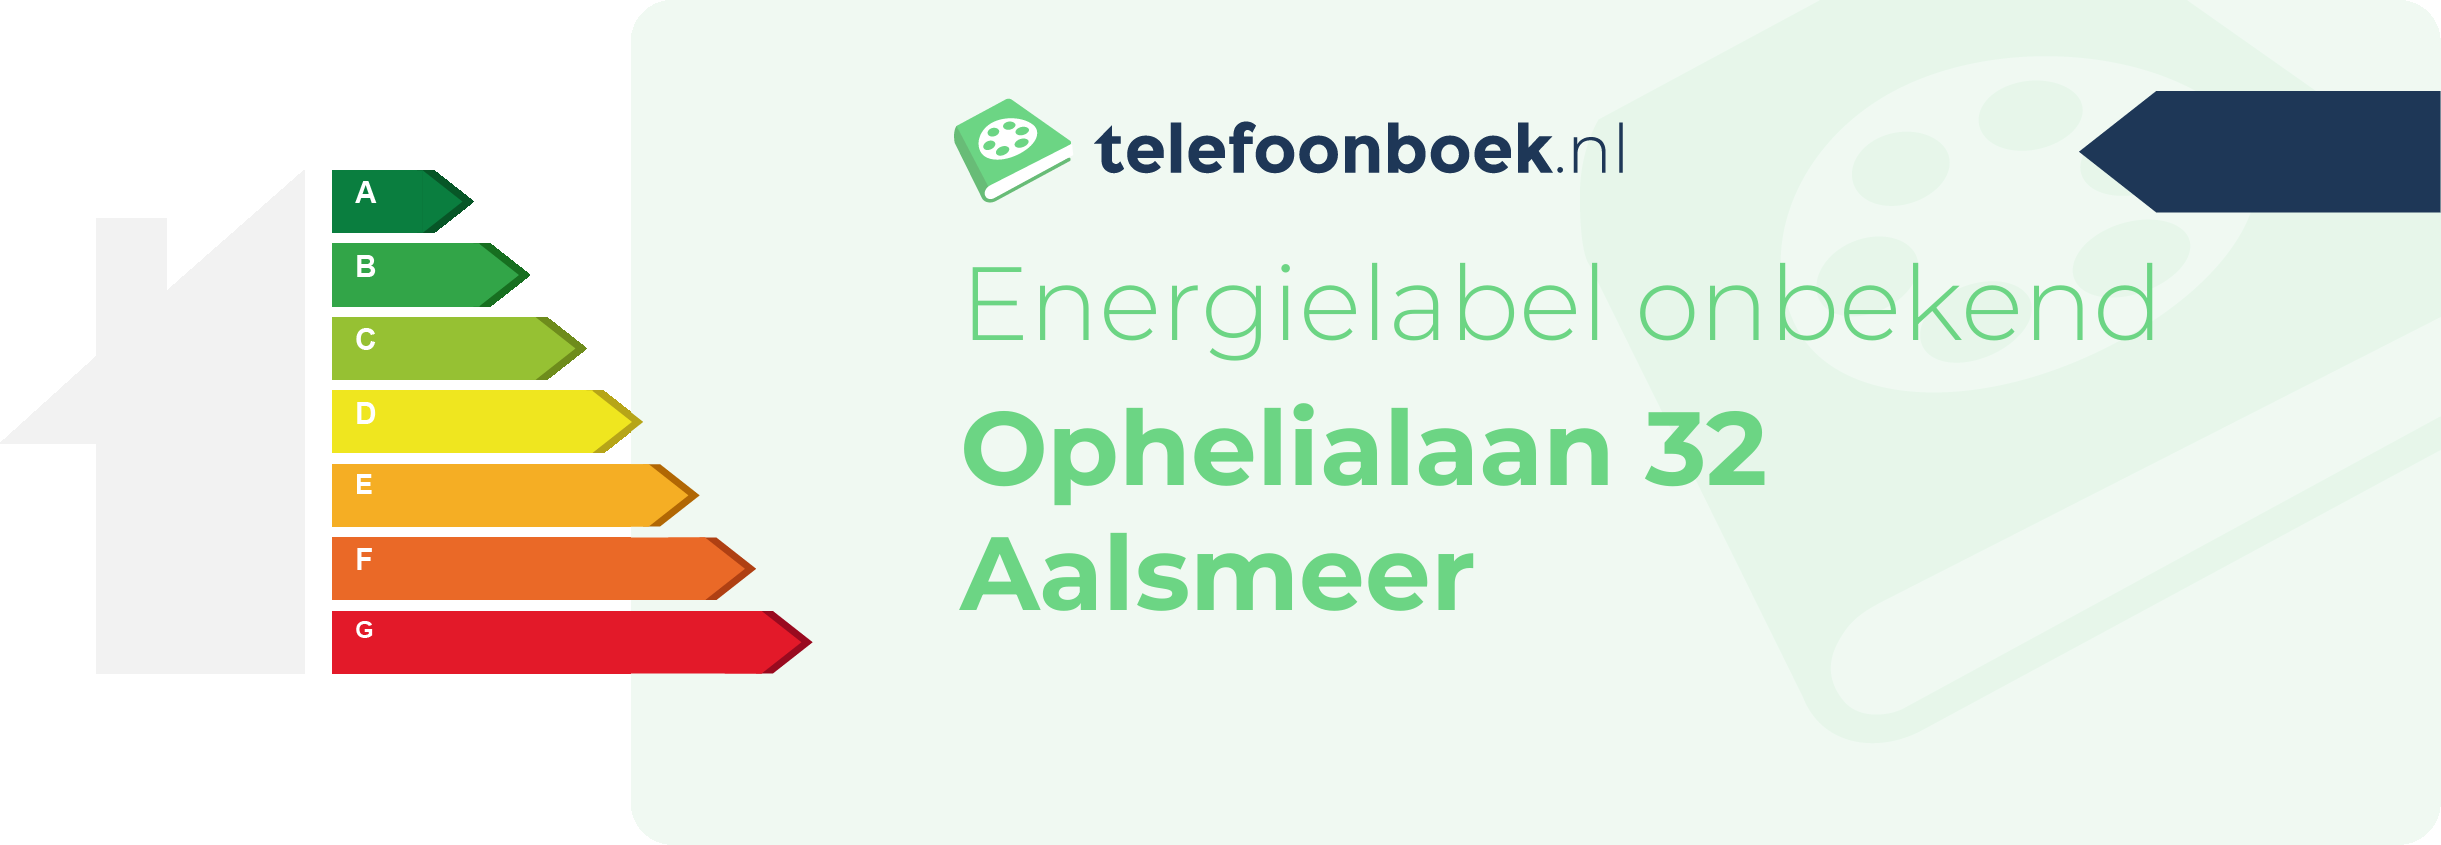 Energielabel Ophelialaan 32 Aalsmeer